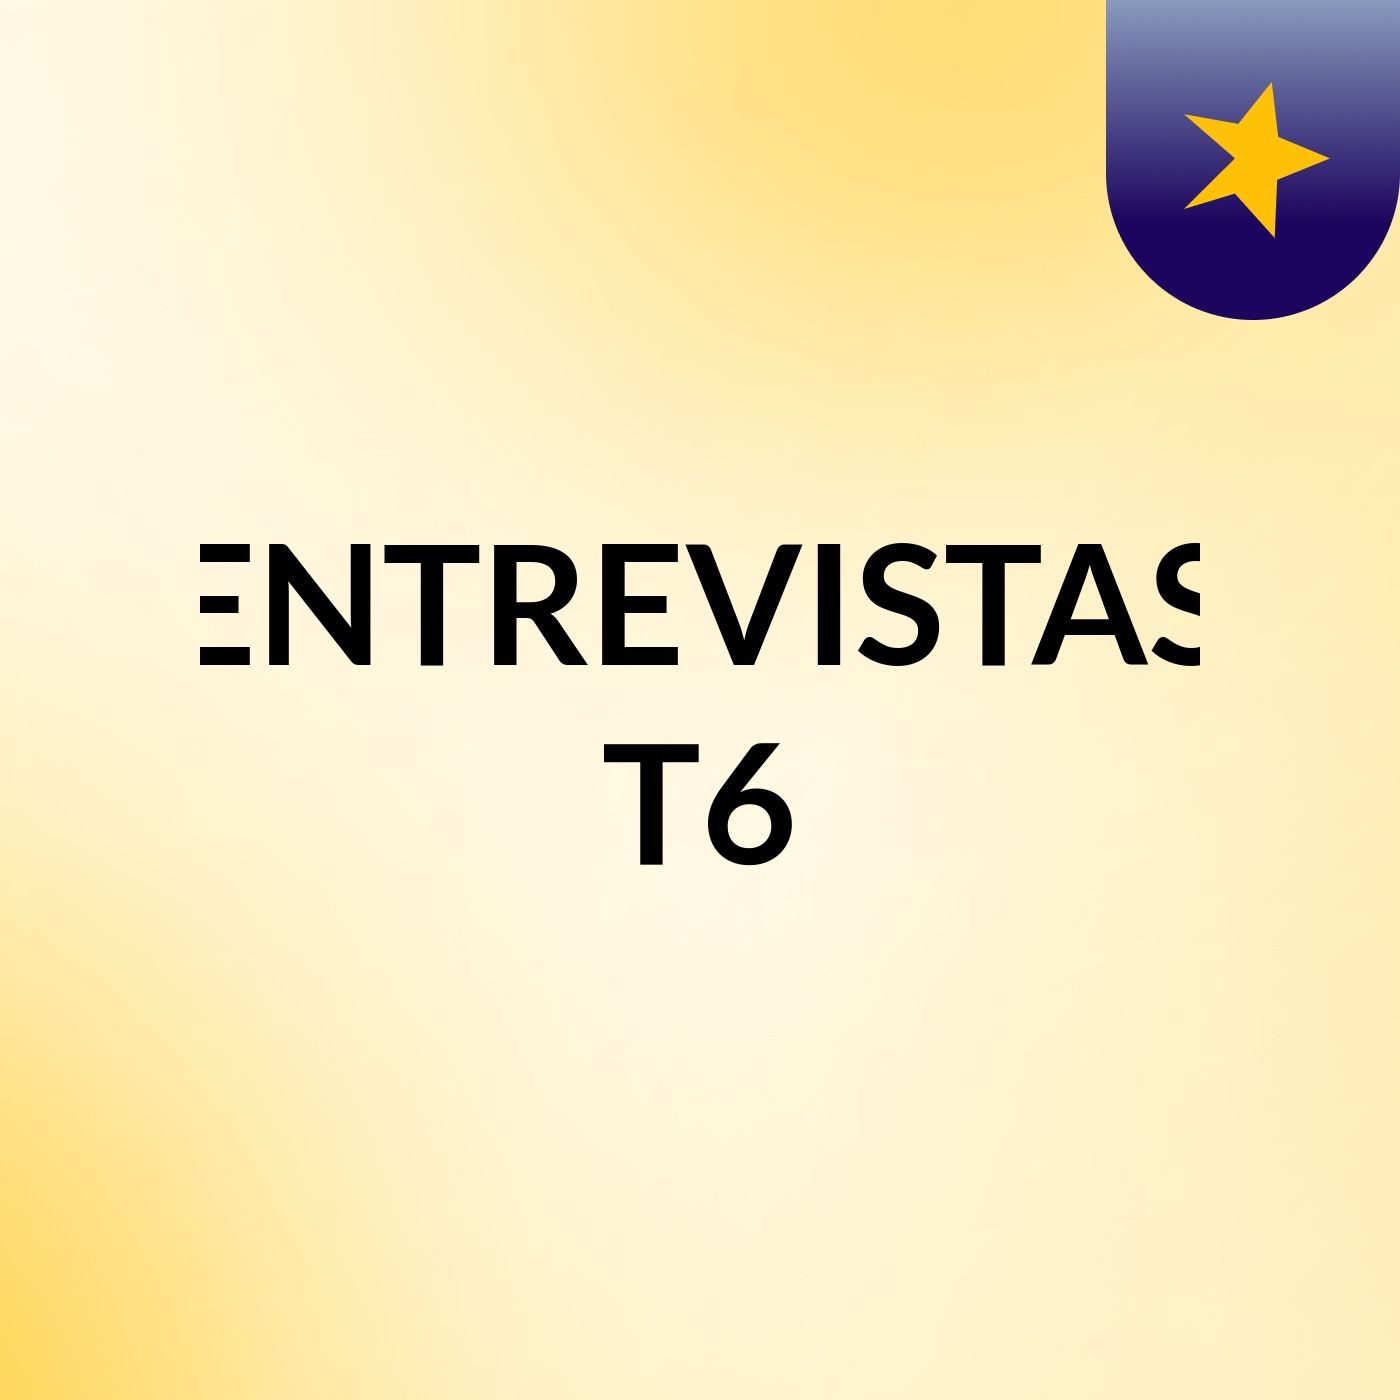 ENTREVISTAS T6